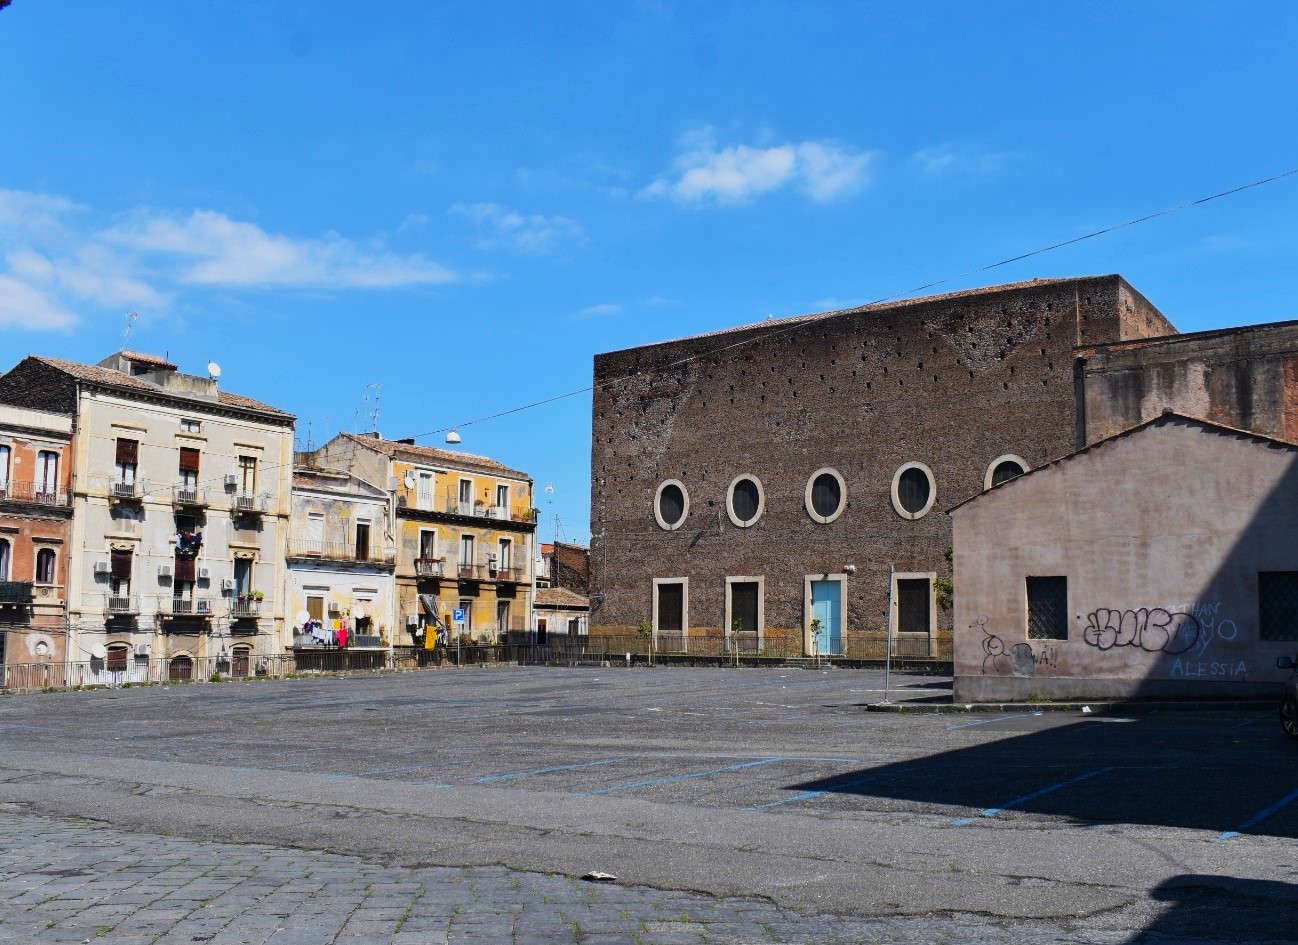 Paesaggi aperti fa tappa nel quartiere Antico Corso di Catania